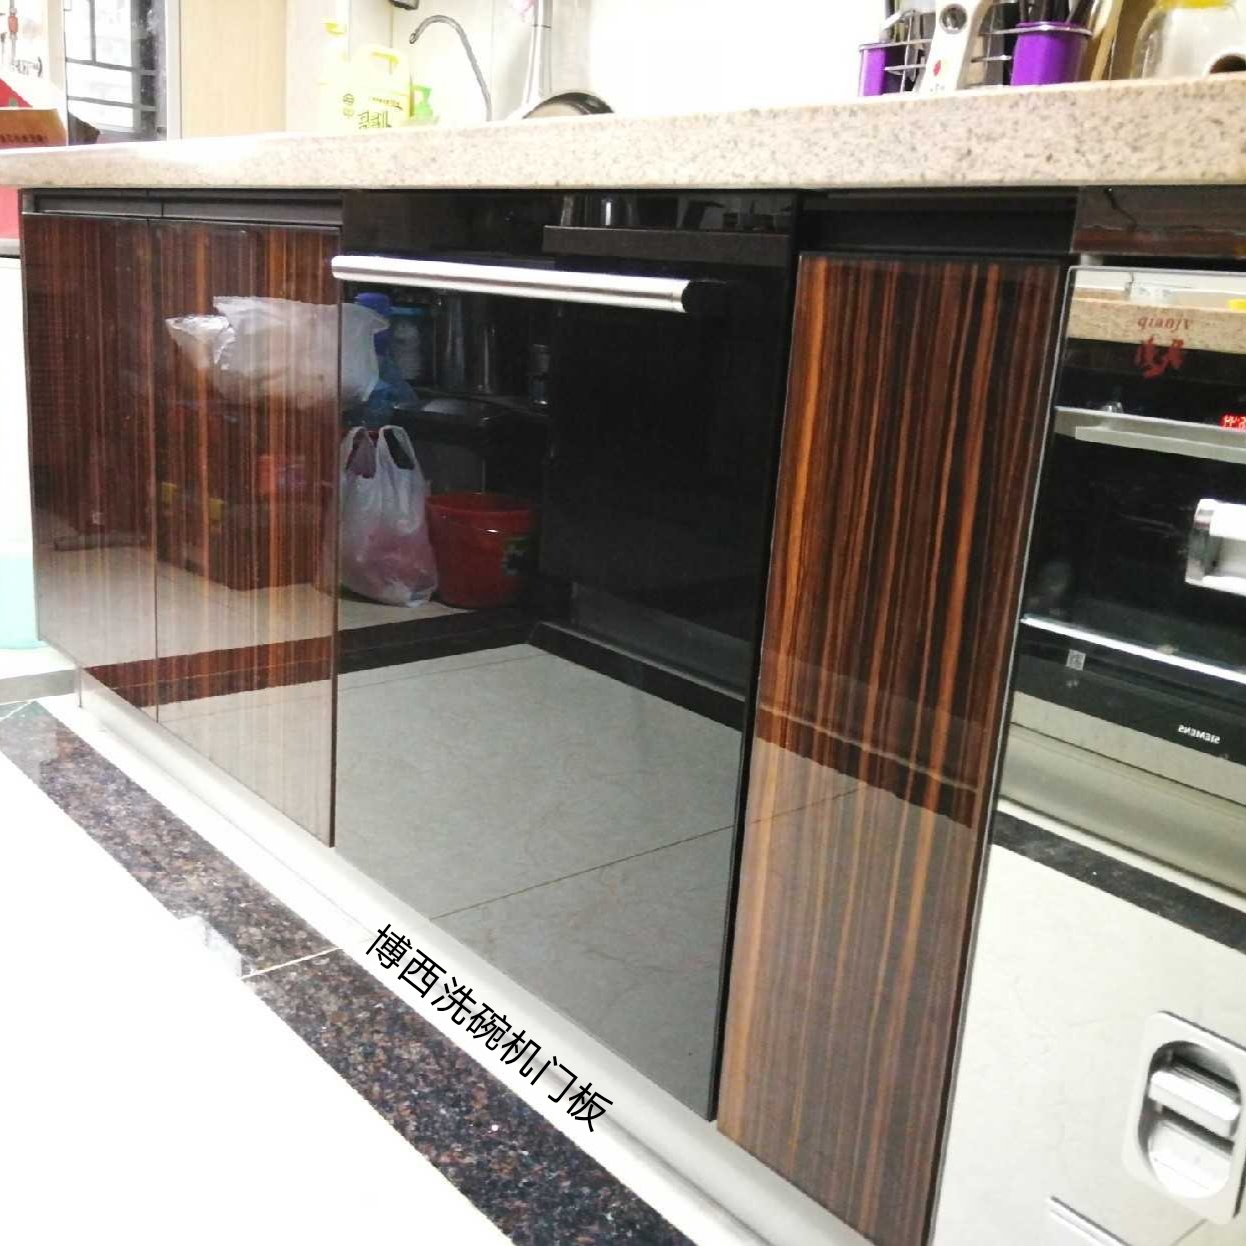 定制嵌入式冰箱洗碗机玻璃门板黑色白色面板自定义尺寸带拉手配件 - 图1